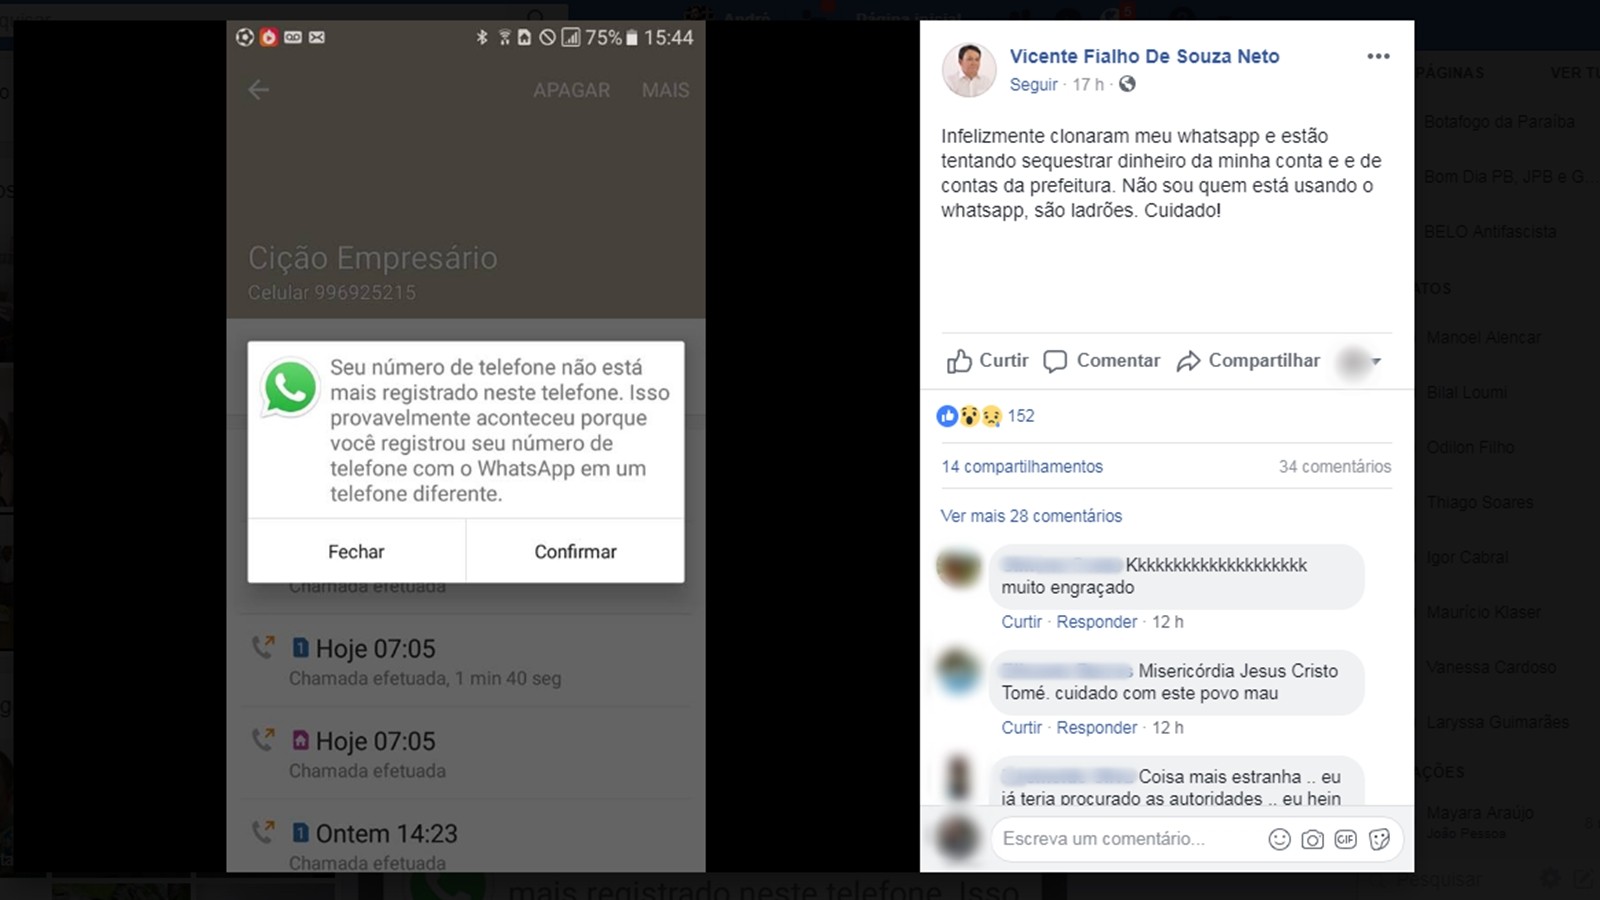 Prefeito de Serra Branca usou perfil em rede social para relatar suposta clonagem do celular (Foto: Reprodução/Facebook/Vicente Fialho de Souza Neto)